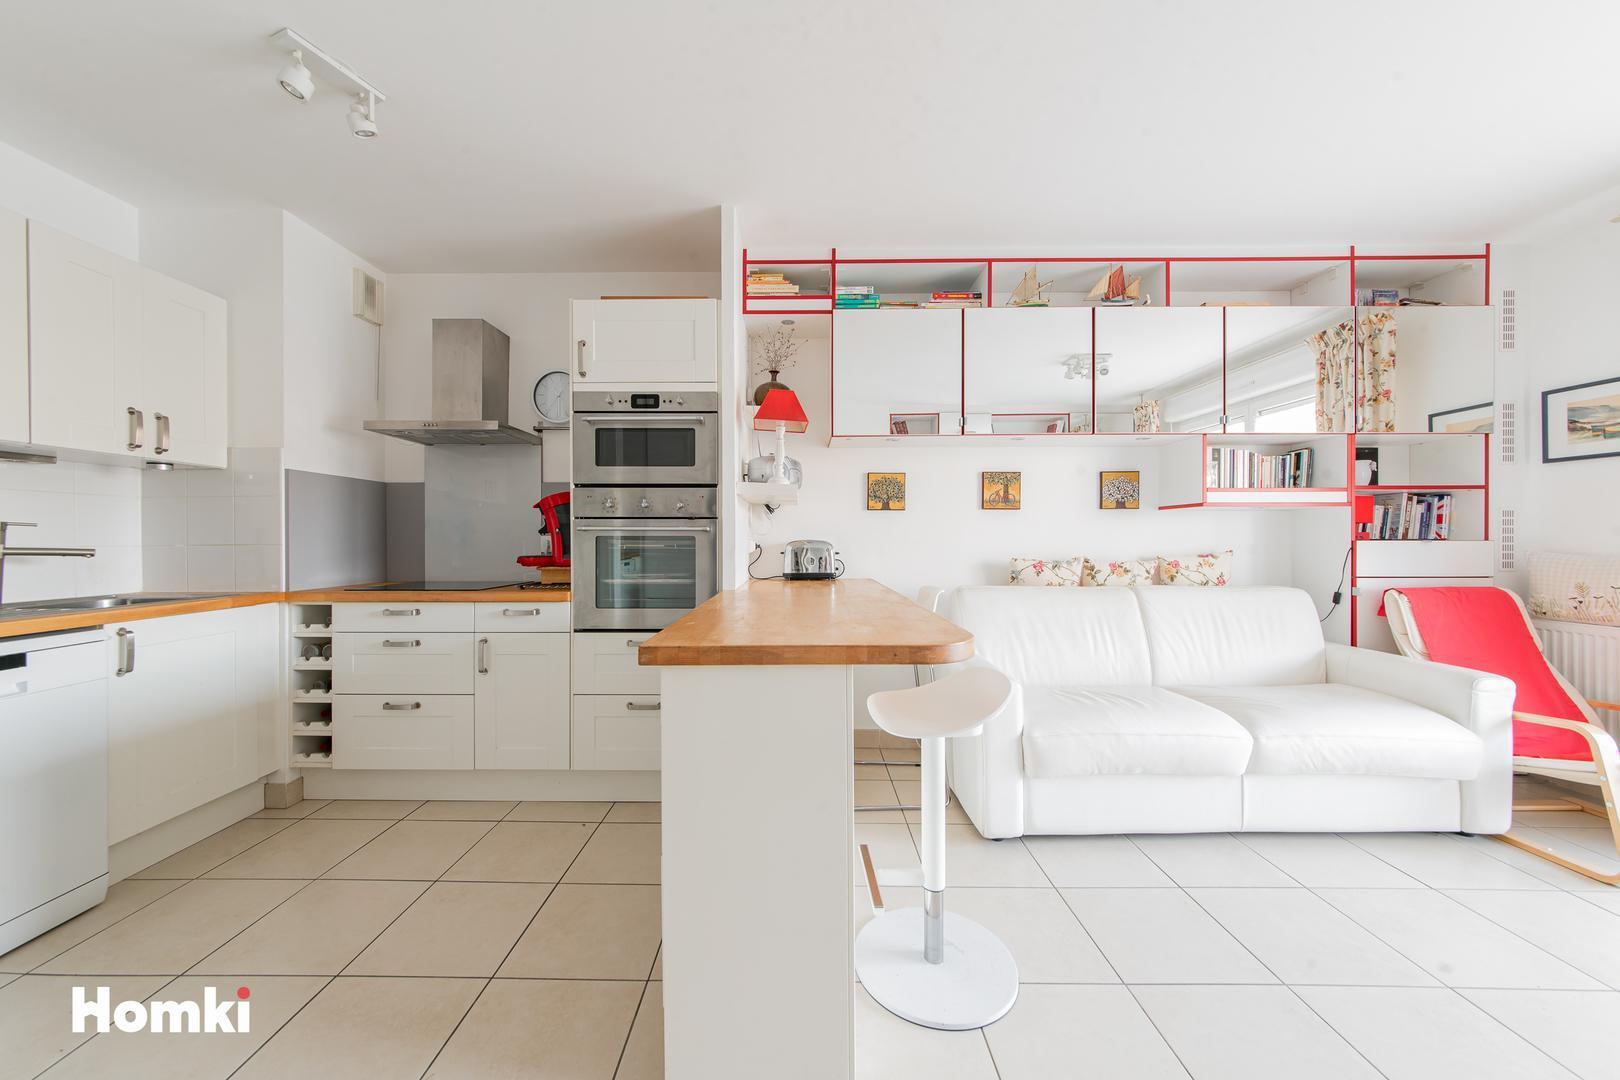 Homki - Vente Appartement  de 41.0 m² à Aix-en-Provence 13090